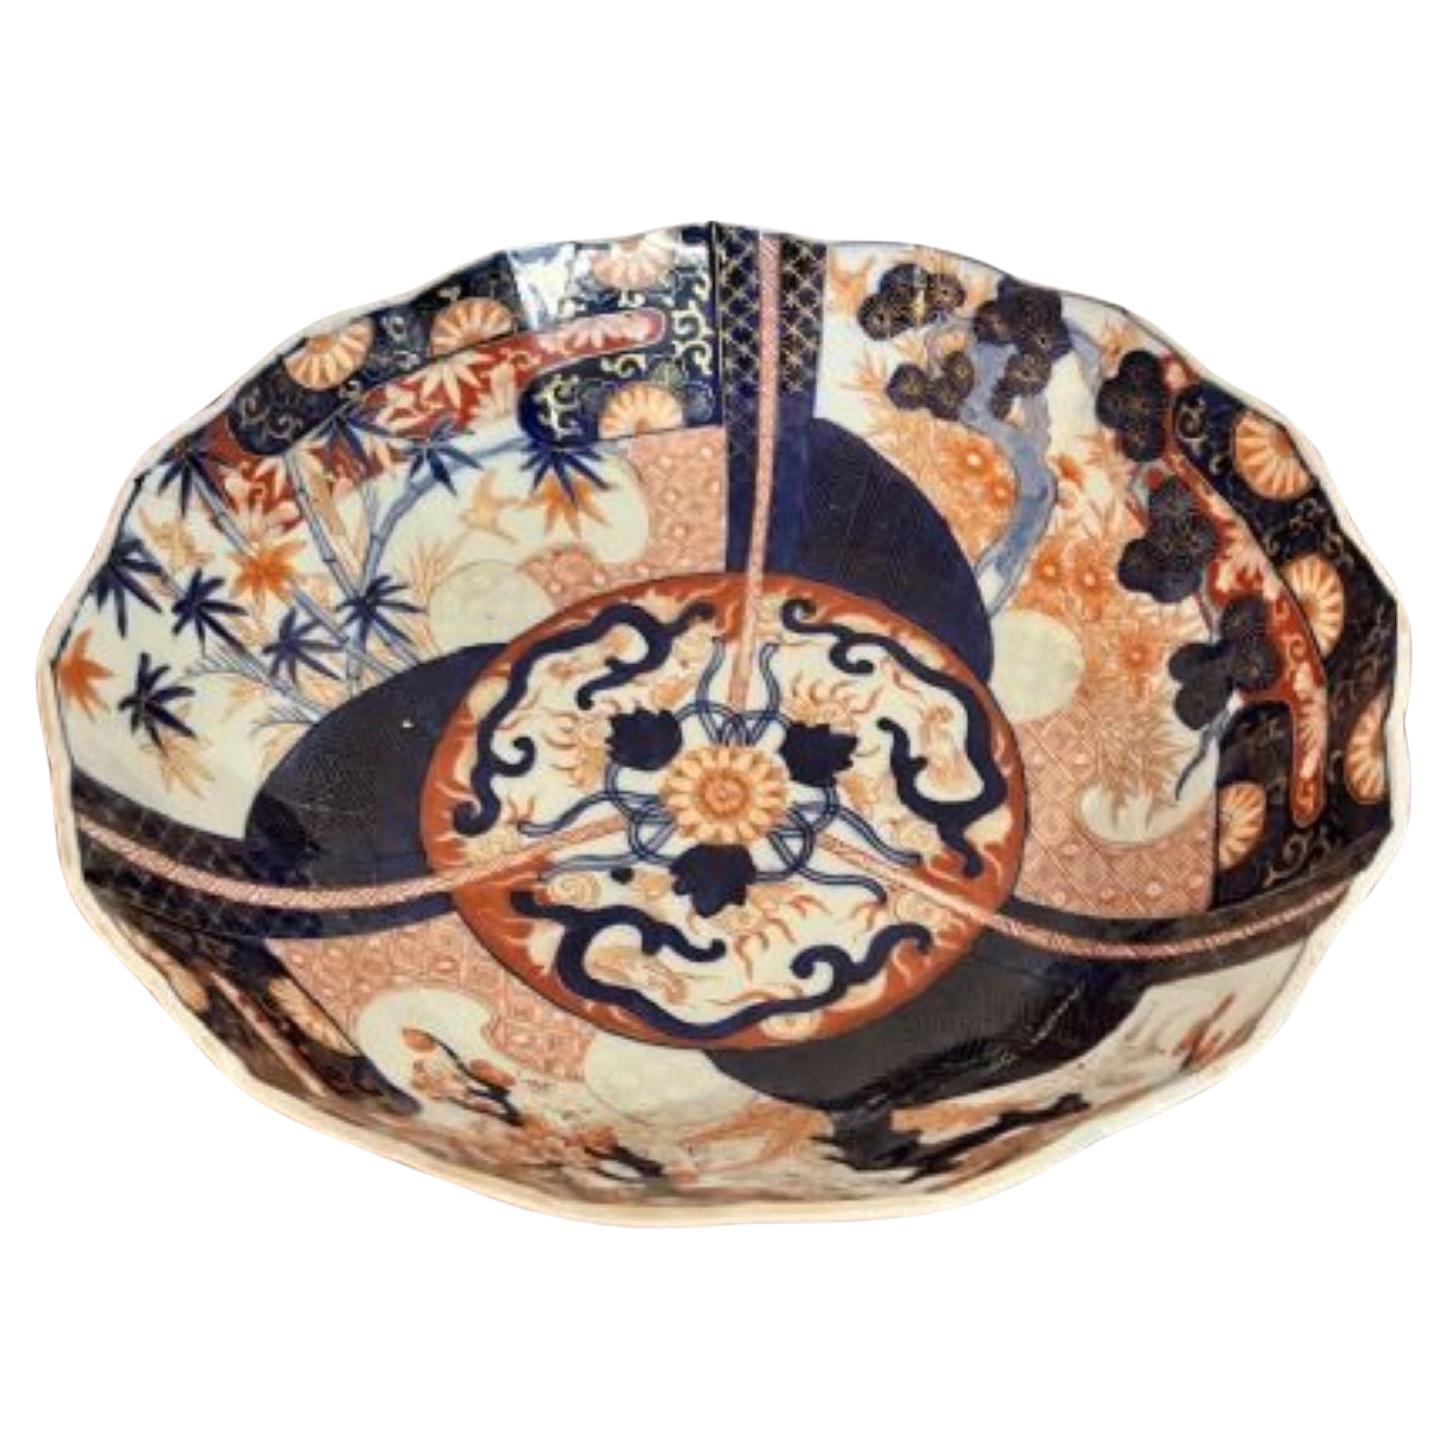 Quality antique Japanese Imari bowl